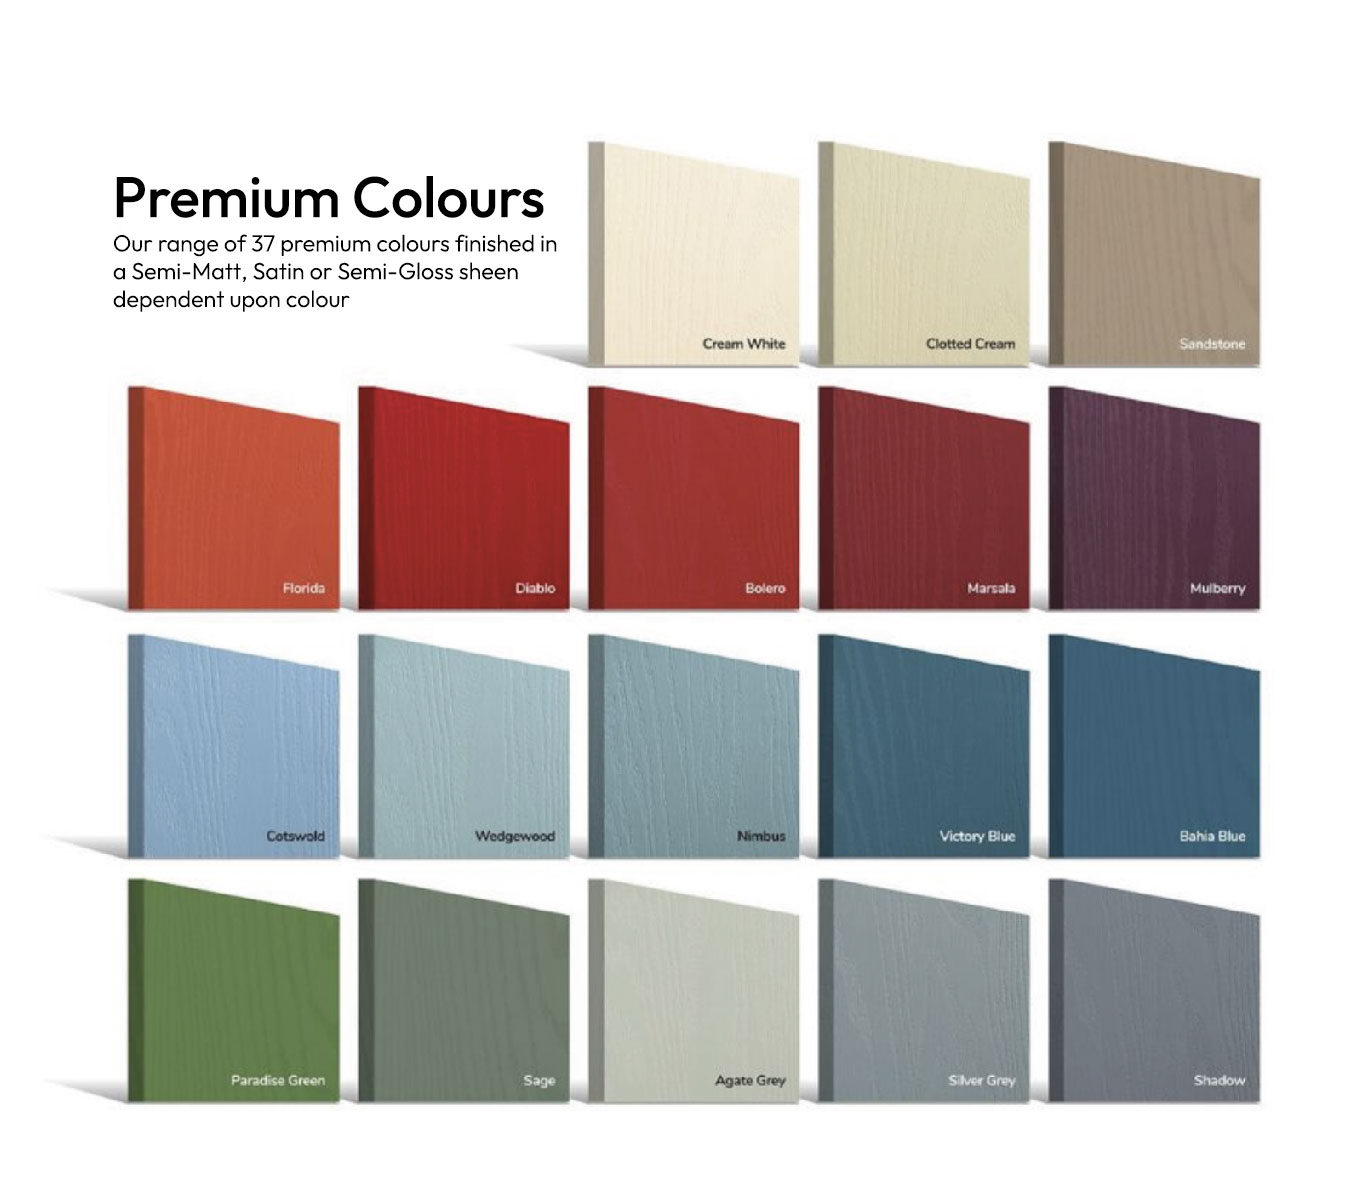 Premium Colours